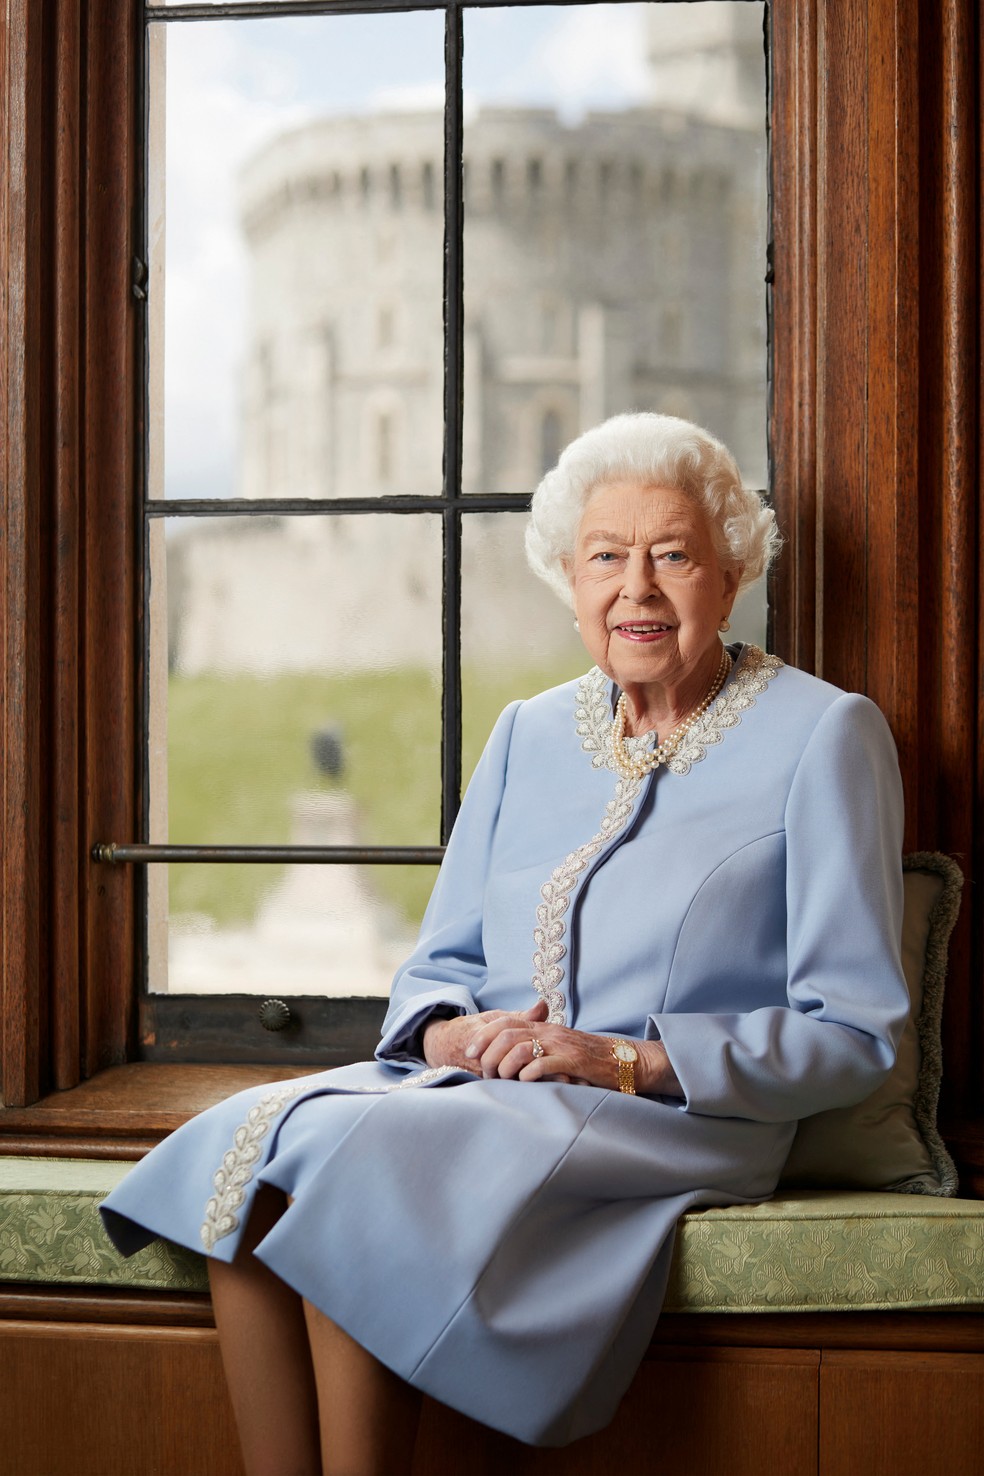 Retrato oficial do Jubileu de Platina da Rainha Elizabeth II feito no Castelo de Windsor e divulgado em 1ºde junho de 2022 — Foto: Royal Household/Ranald Mackechnie/Handout/Reuters